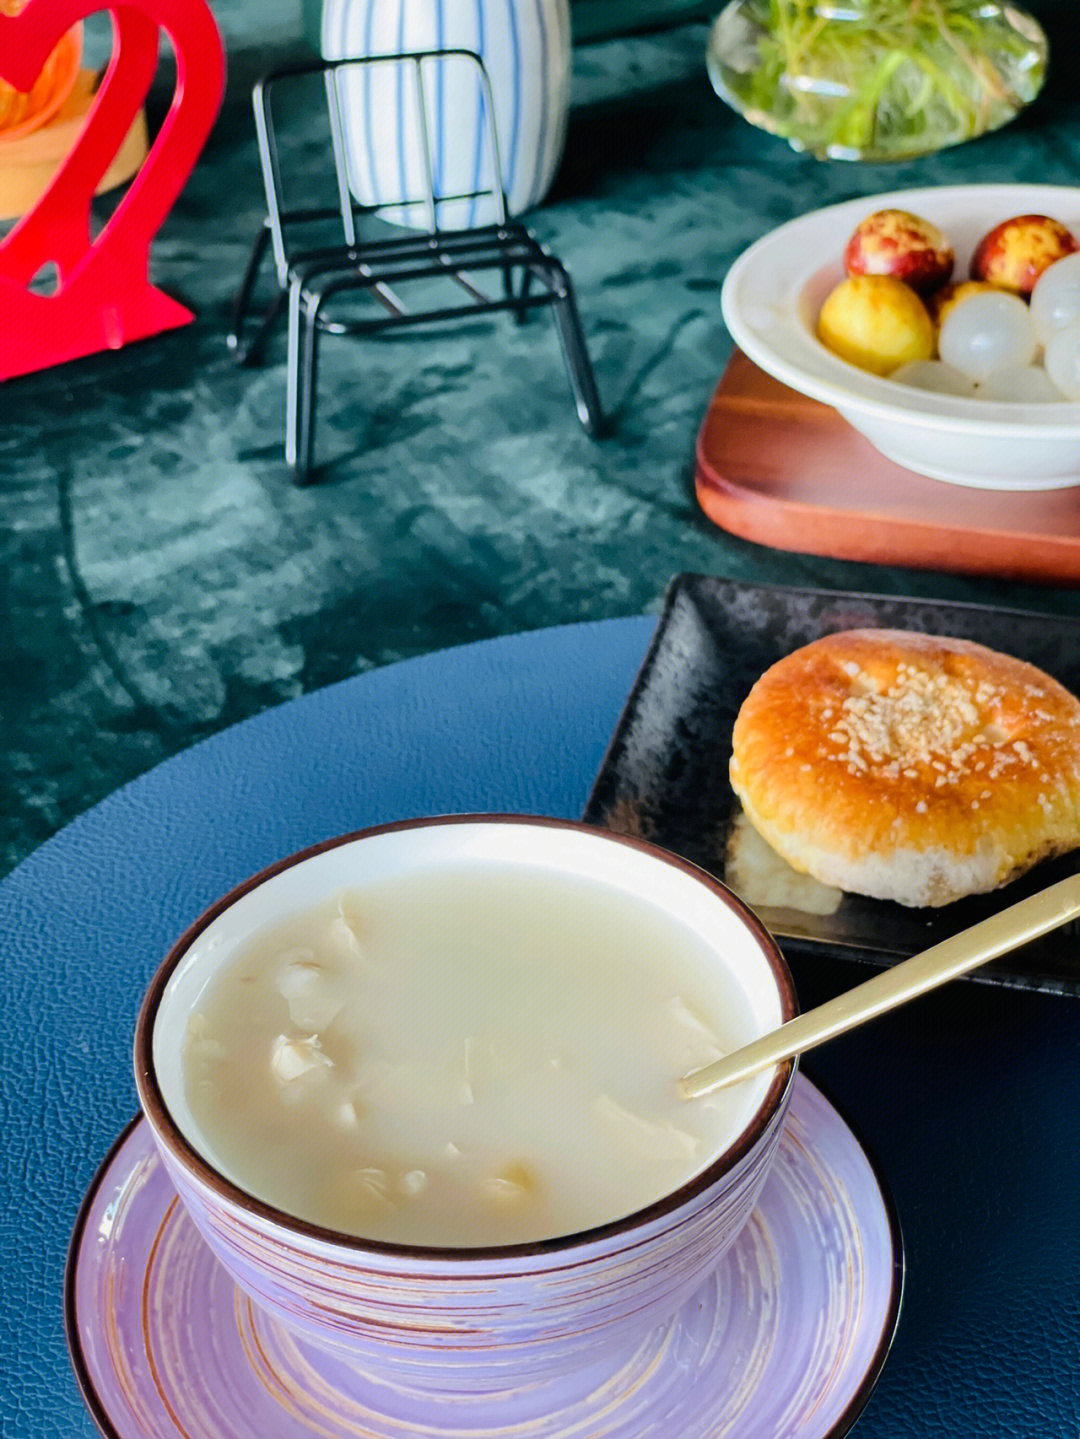 白果薏米腐竹糖水是一道经典的广式甜汤,具有清热去火,健脾养胃之功效